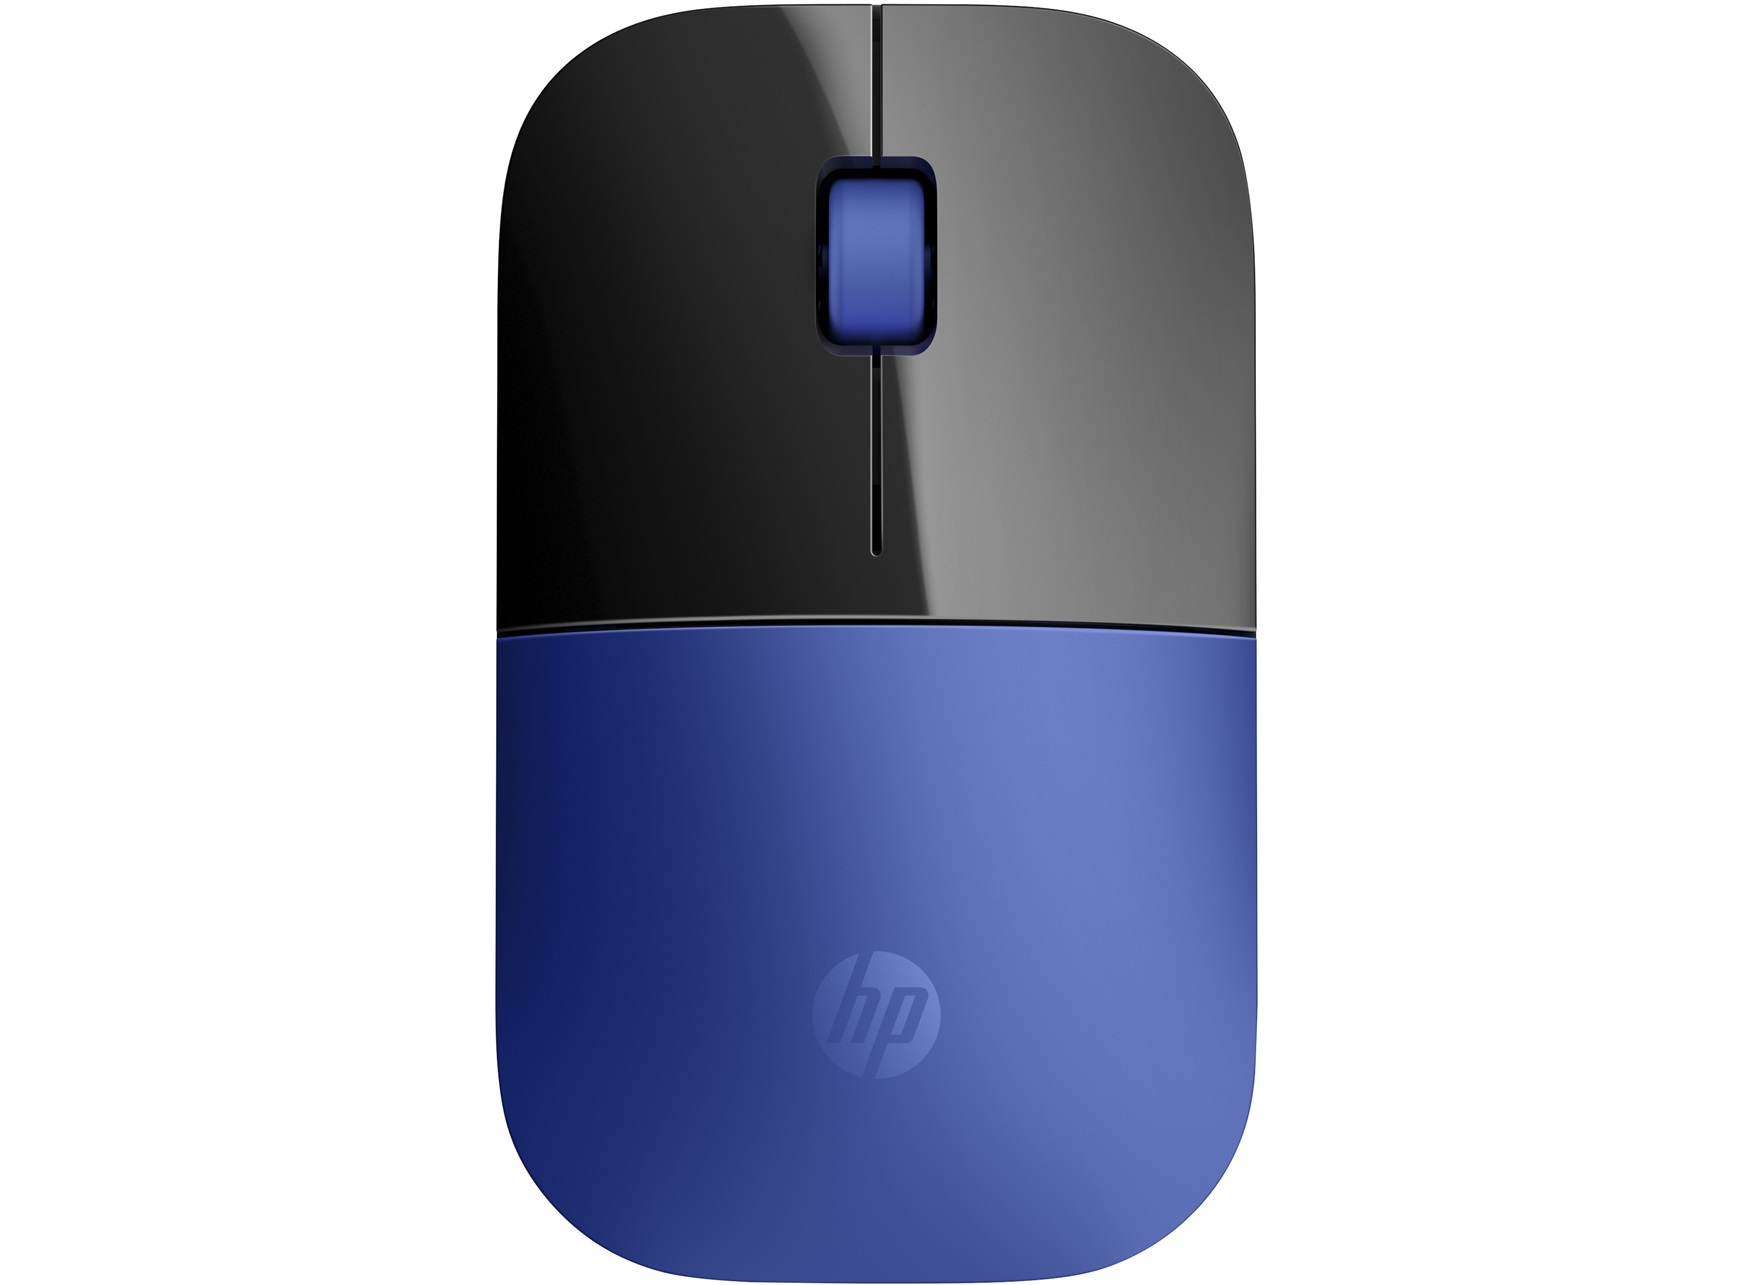 HP Z3700 Blue Wireless MouseHP